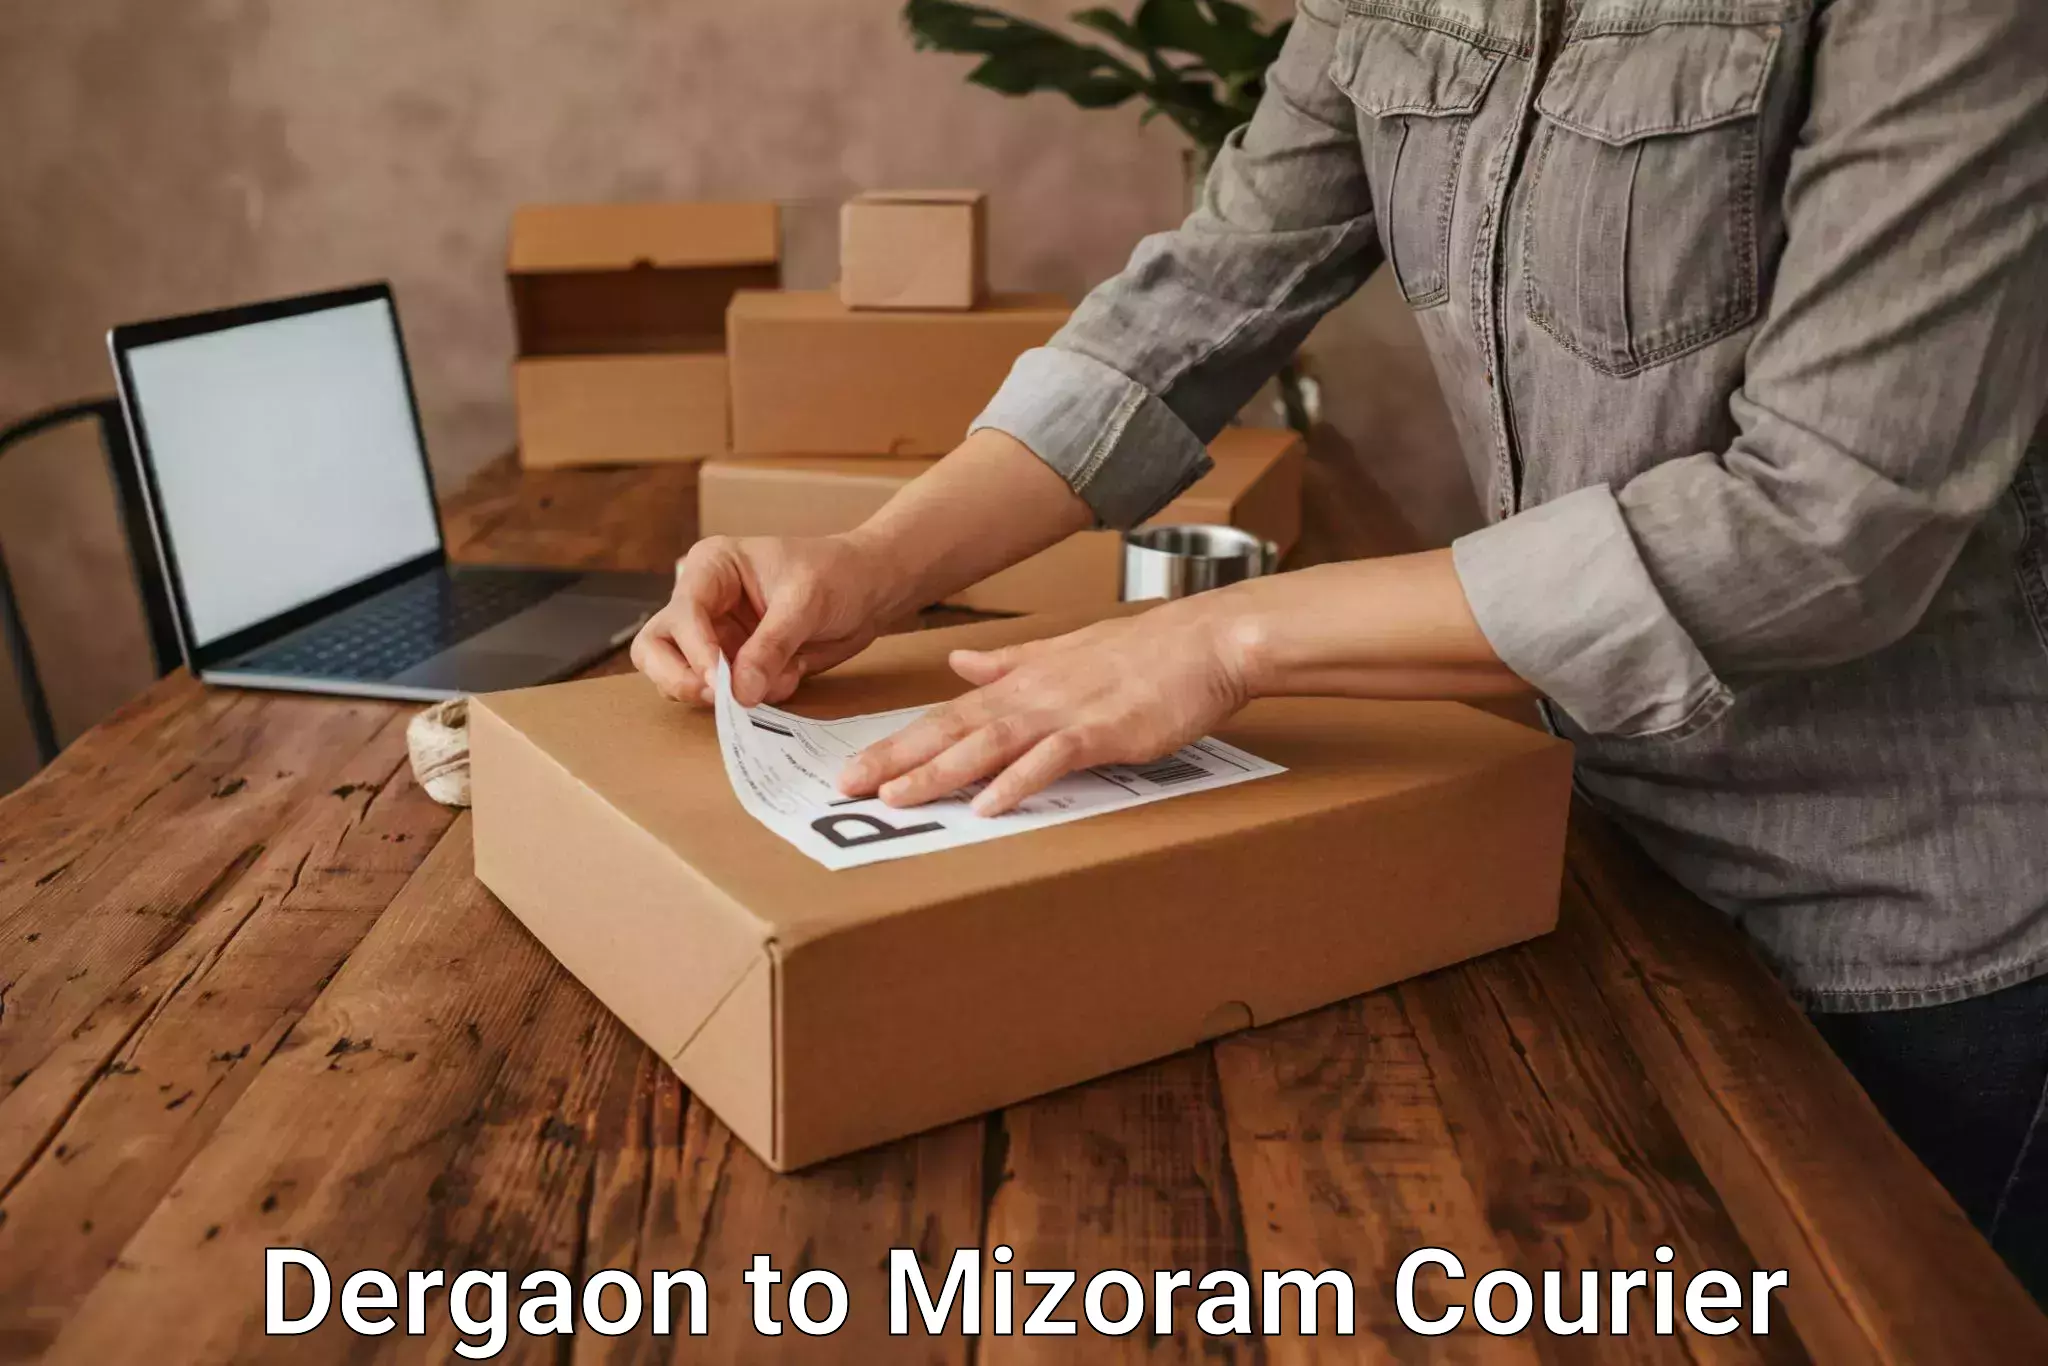 Urgent courier needs Dergaon to Mizoram